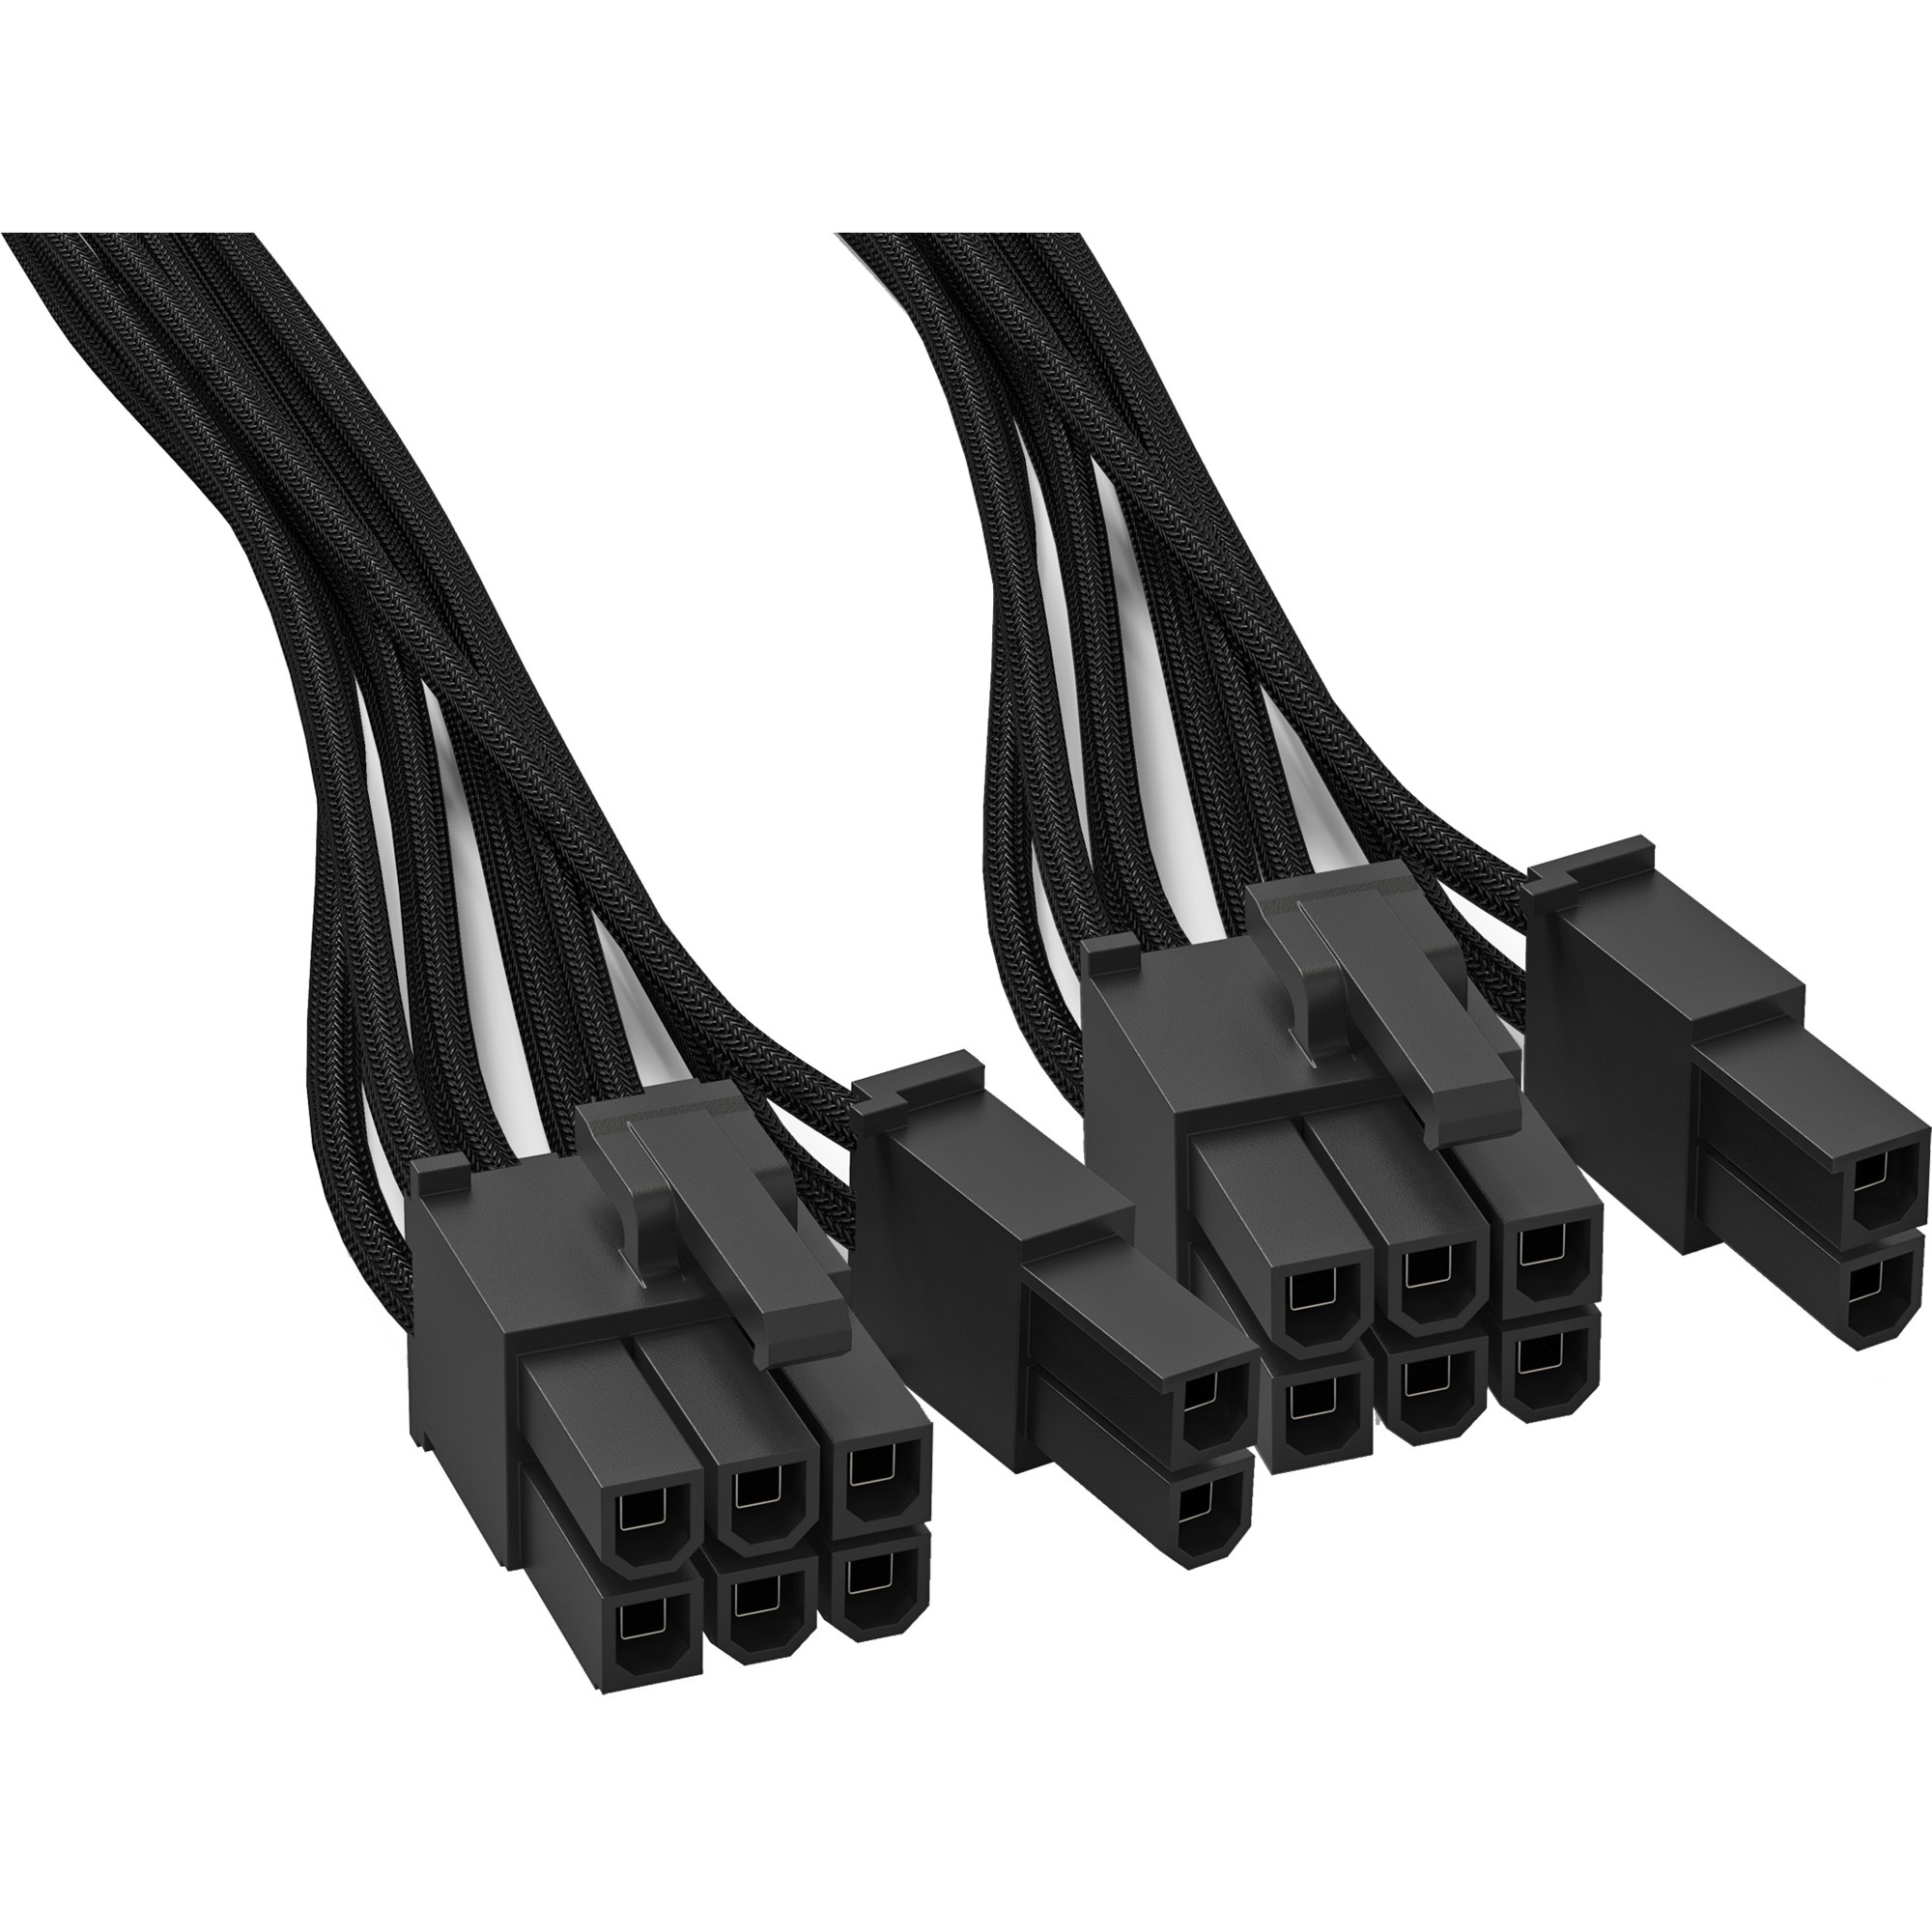 Image of Alternate - Power Kabel CP-6620 2x PCle 6 + 2, Kabelmanagement online einkaufen bei Alternate